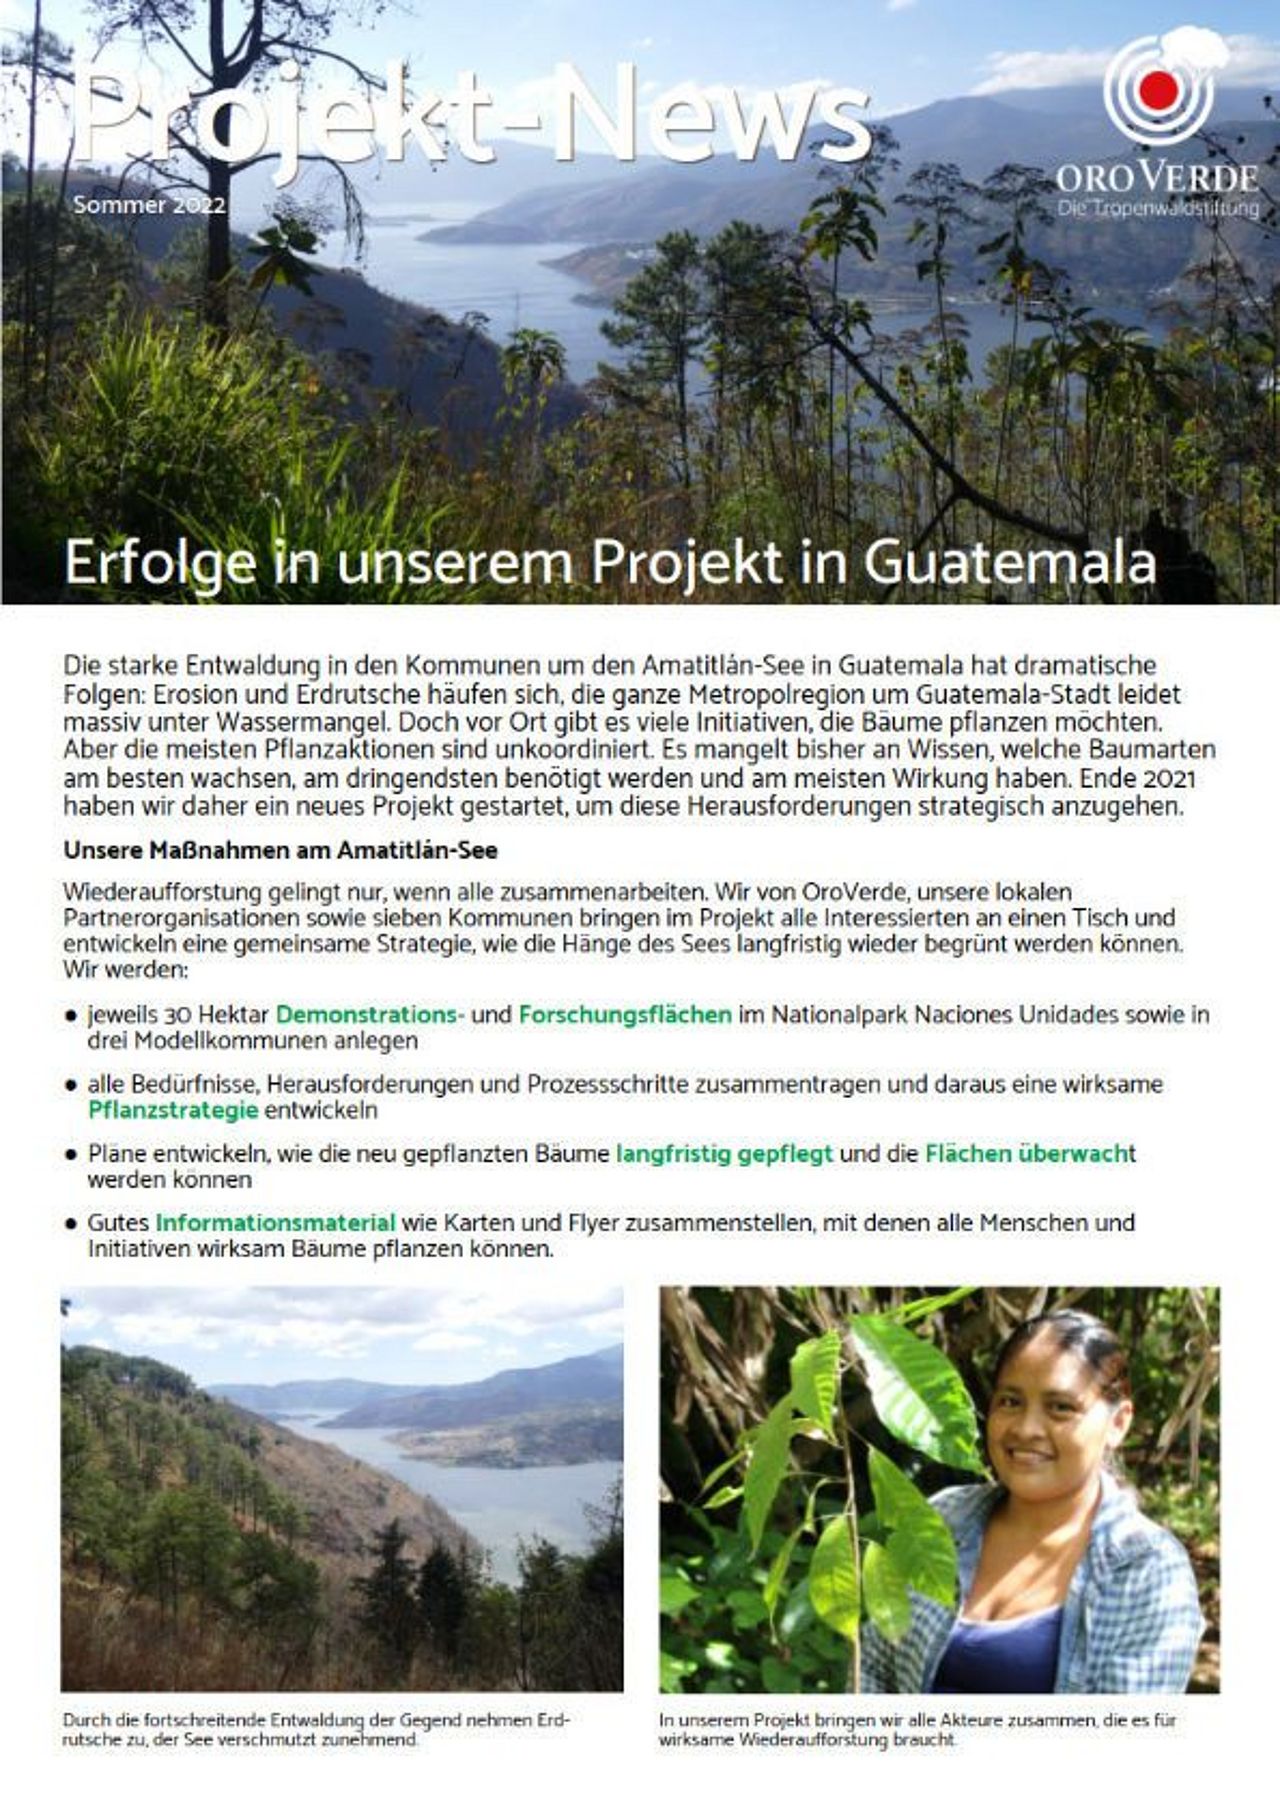 Projekt-Fortschritte am Amatitlán-See in Guatemala im Herbst 2022